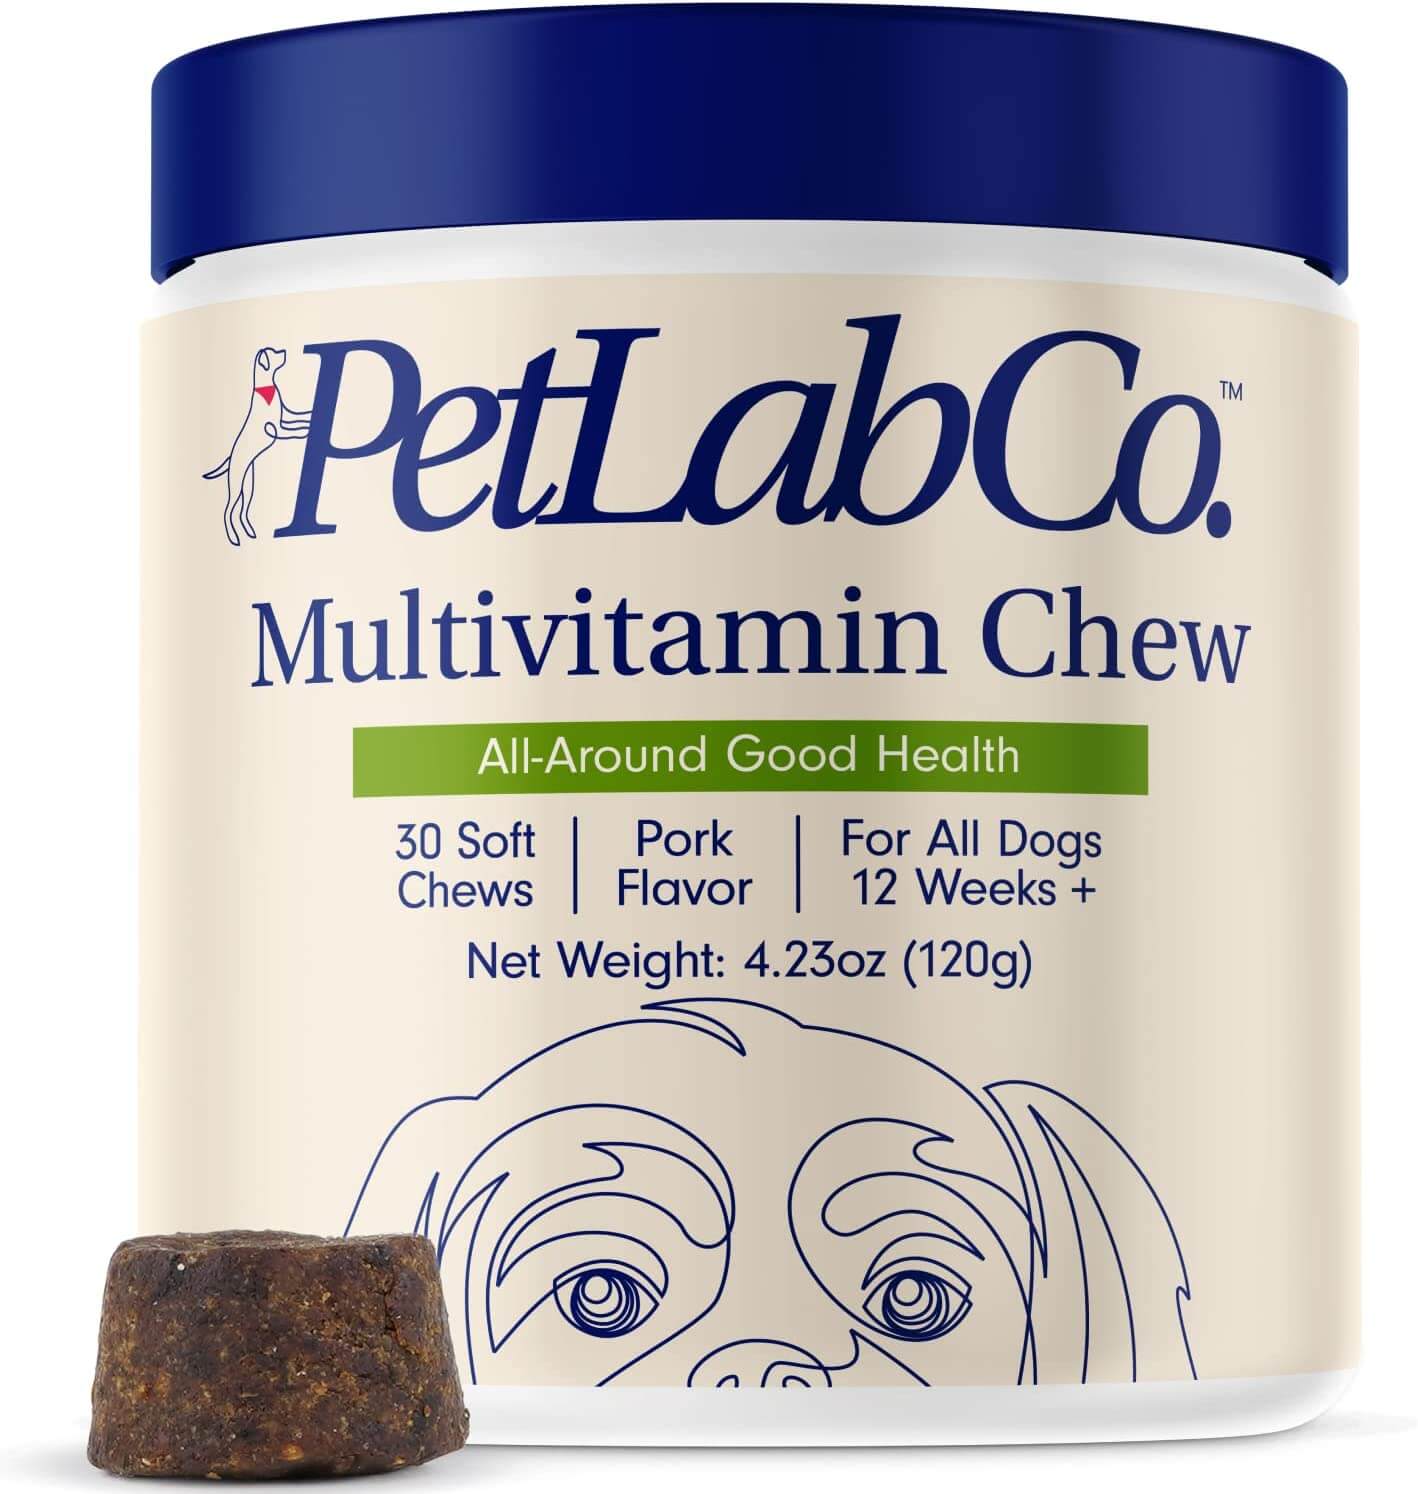 Petlab co multivitamin chew